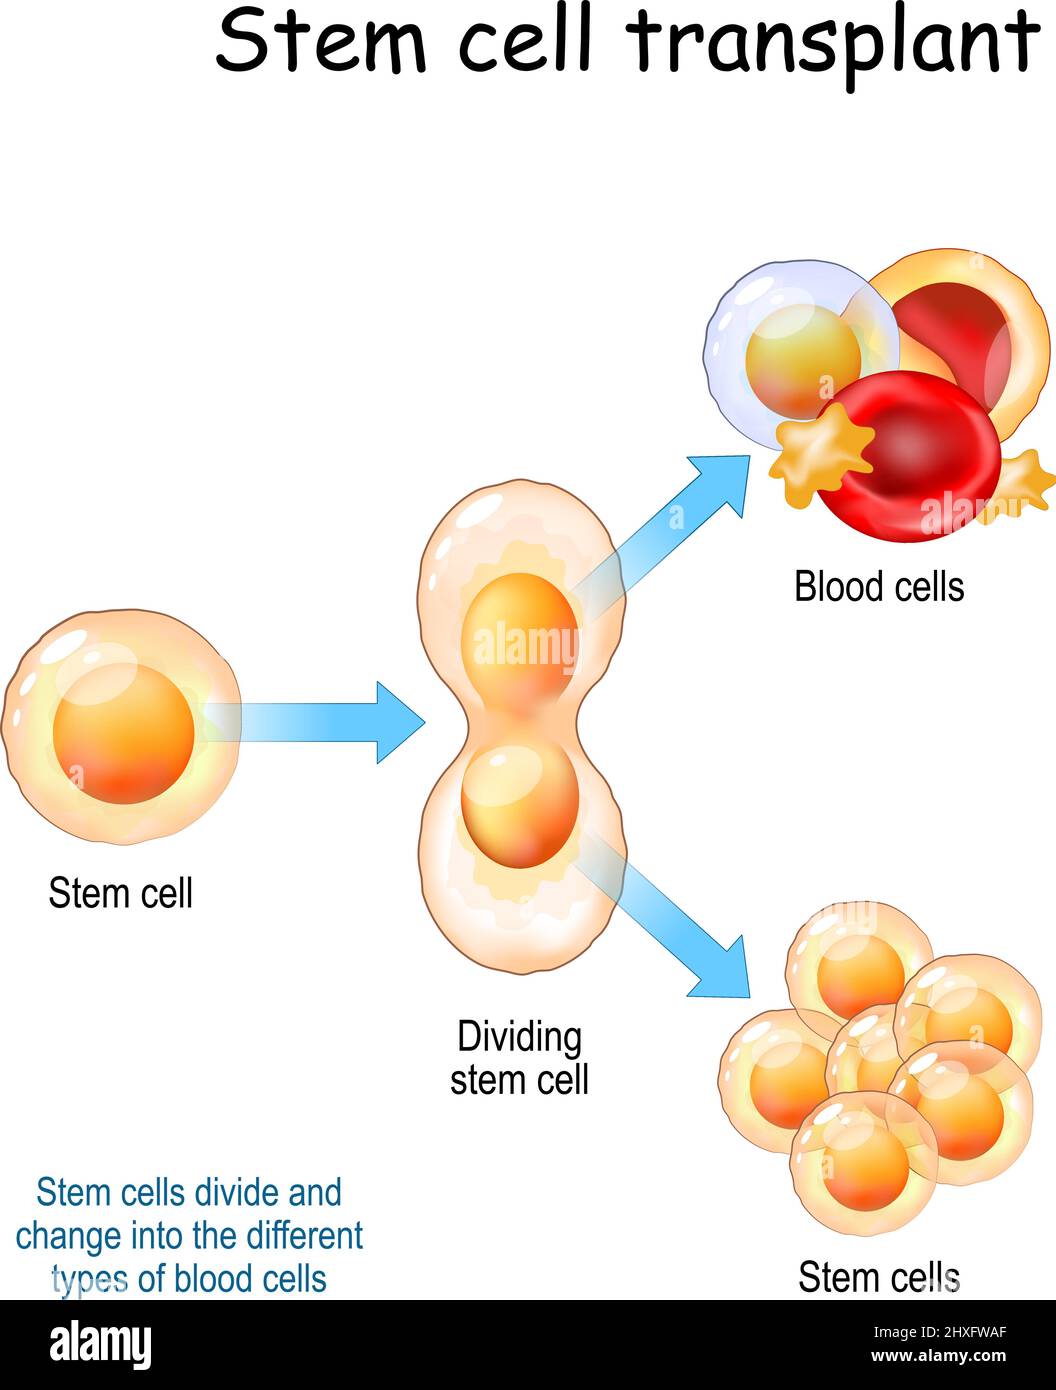 Stammzelltransplantation. Stammzellen teilen sich und wandeln sich in die verschiedenen Arten von Blutzellen um. Vektorgrafik Stock Vektor